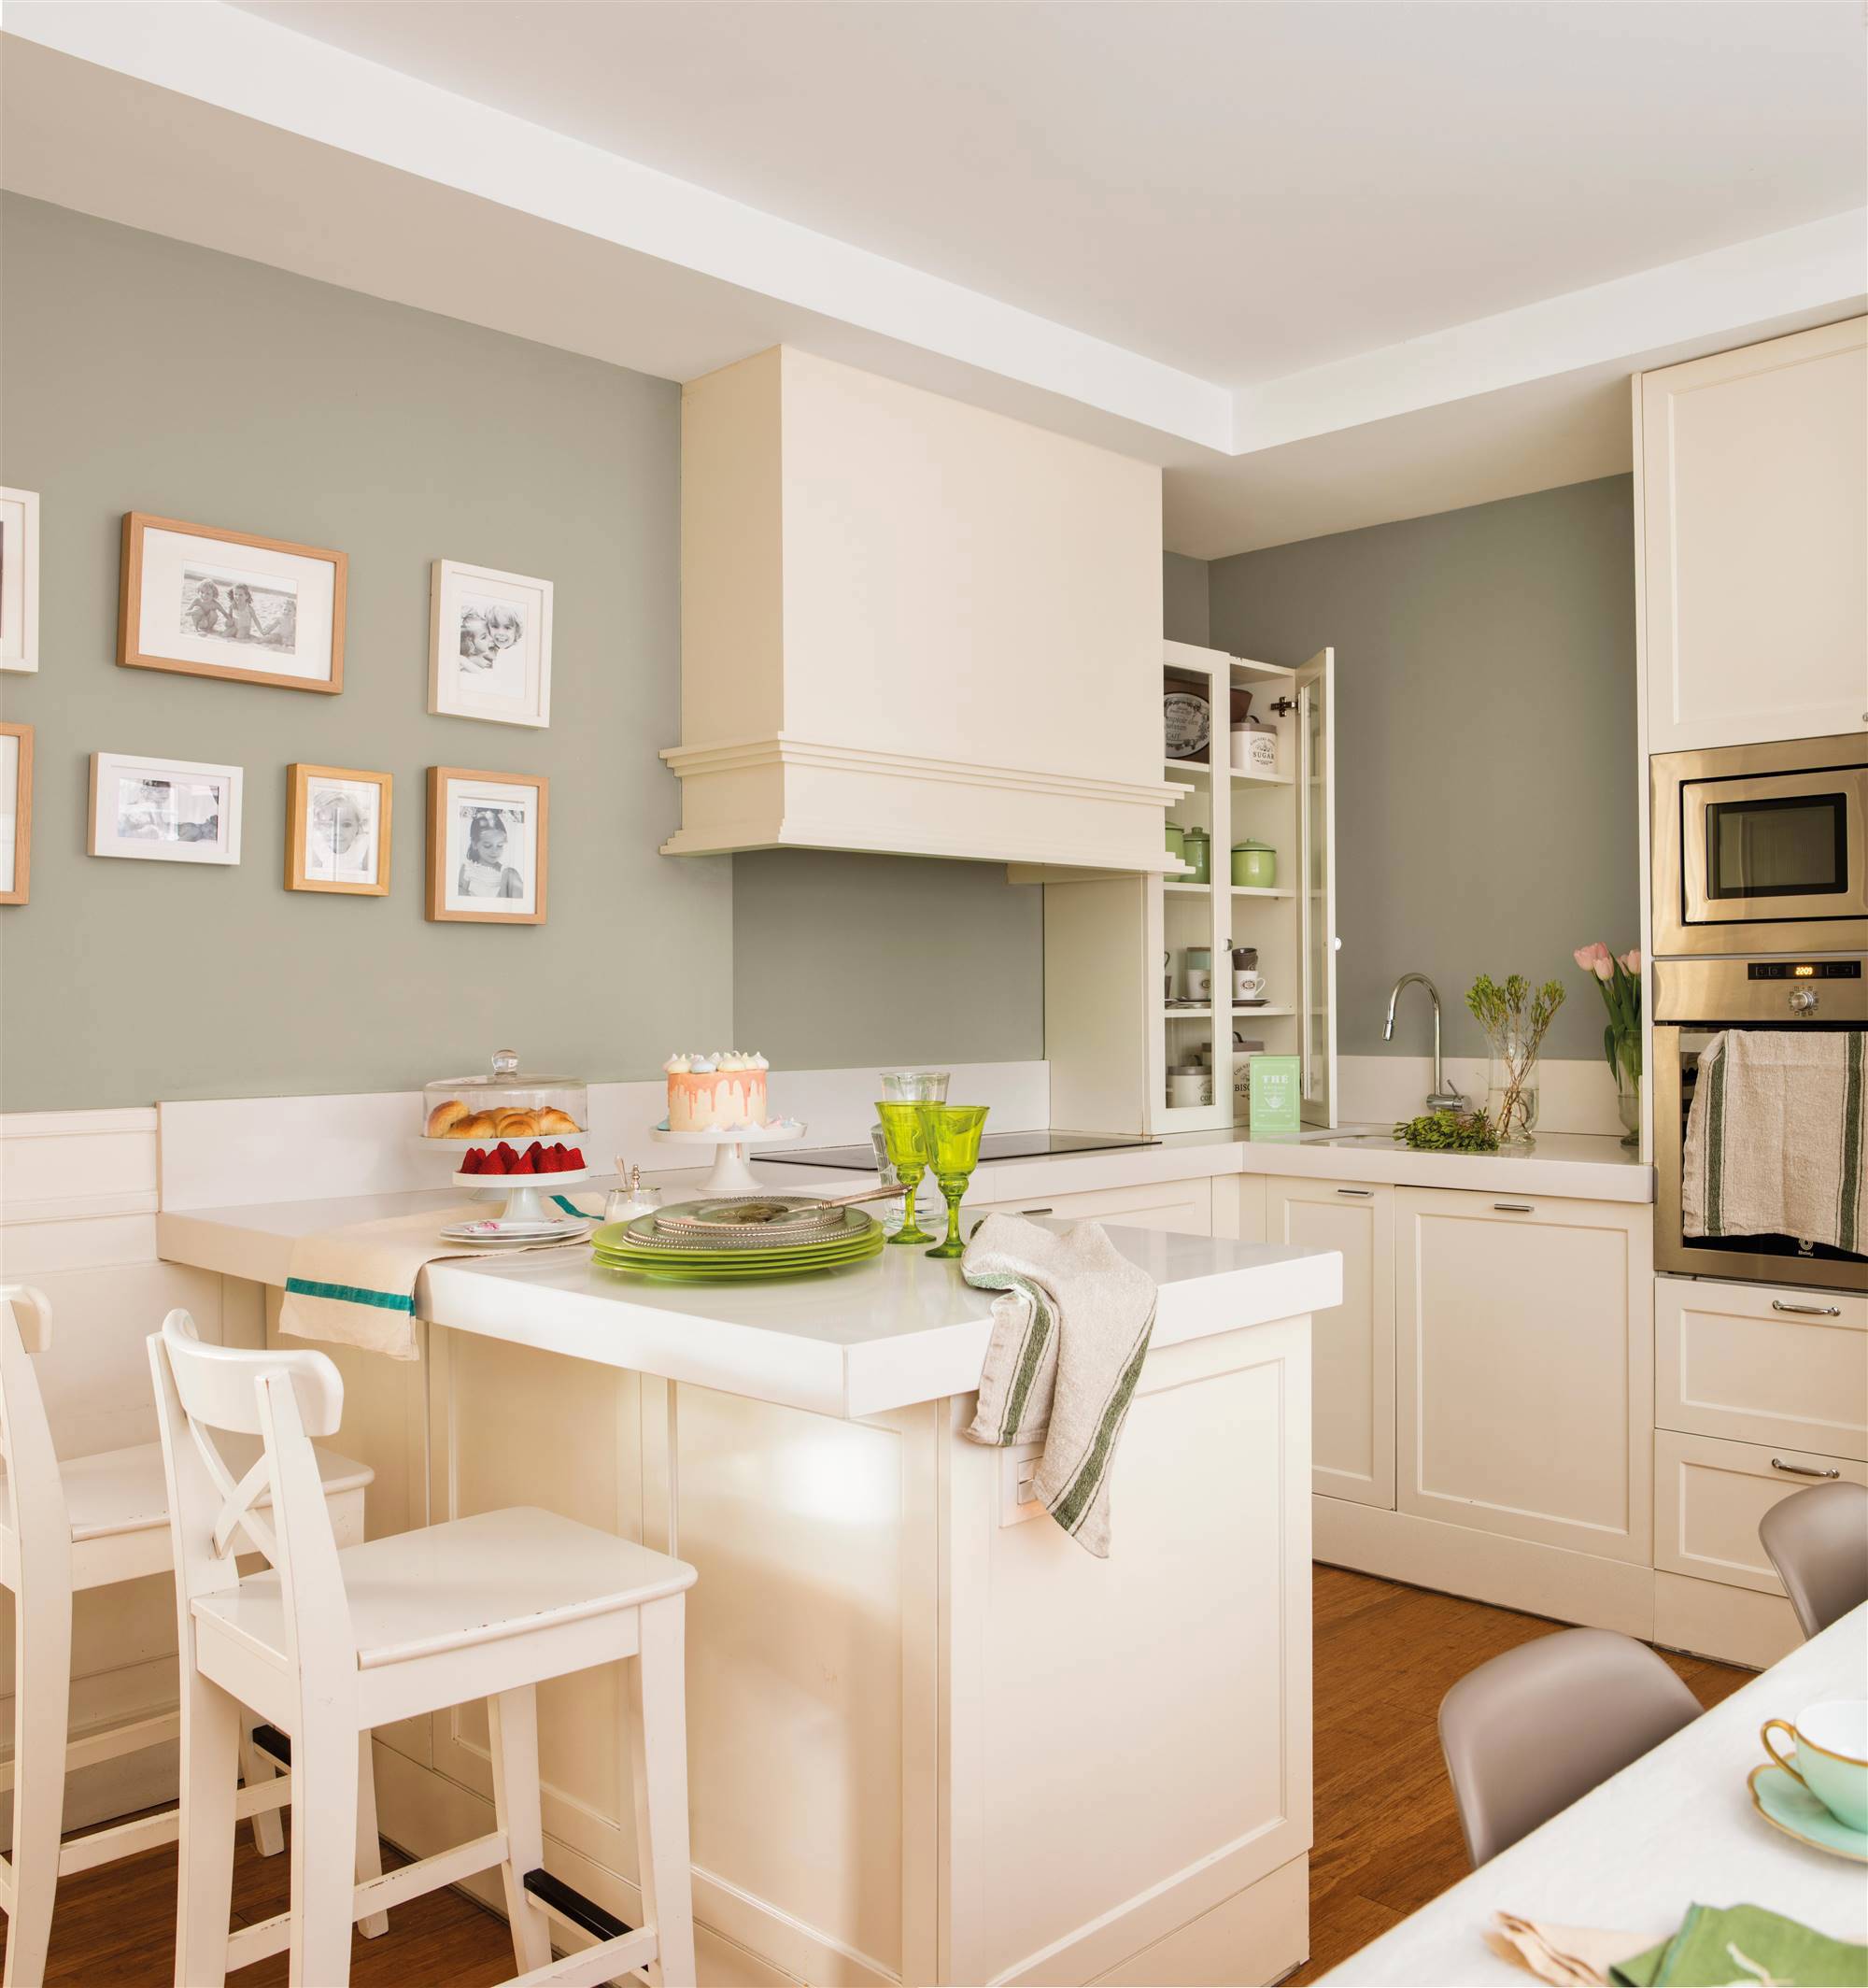 Cocina clásica de color blanco con paredes en verde suave y arrimadero a media altura. 